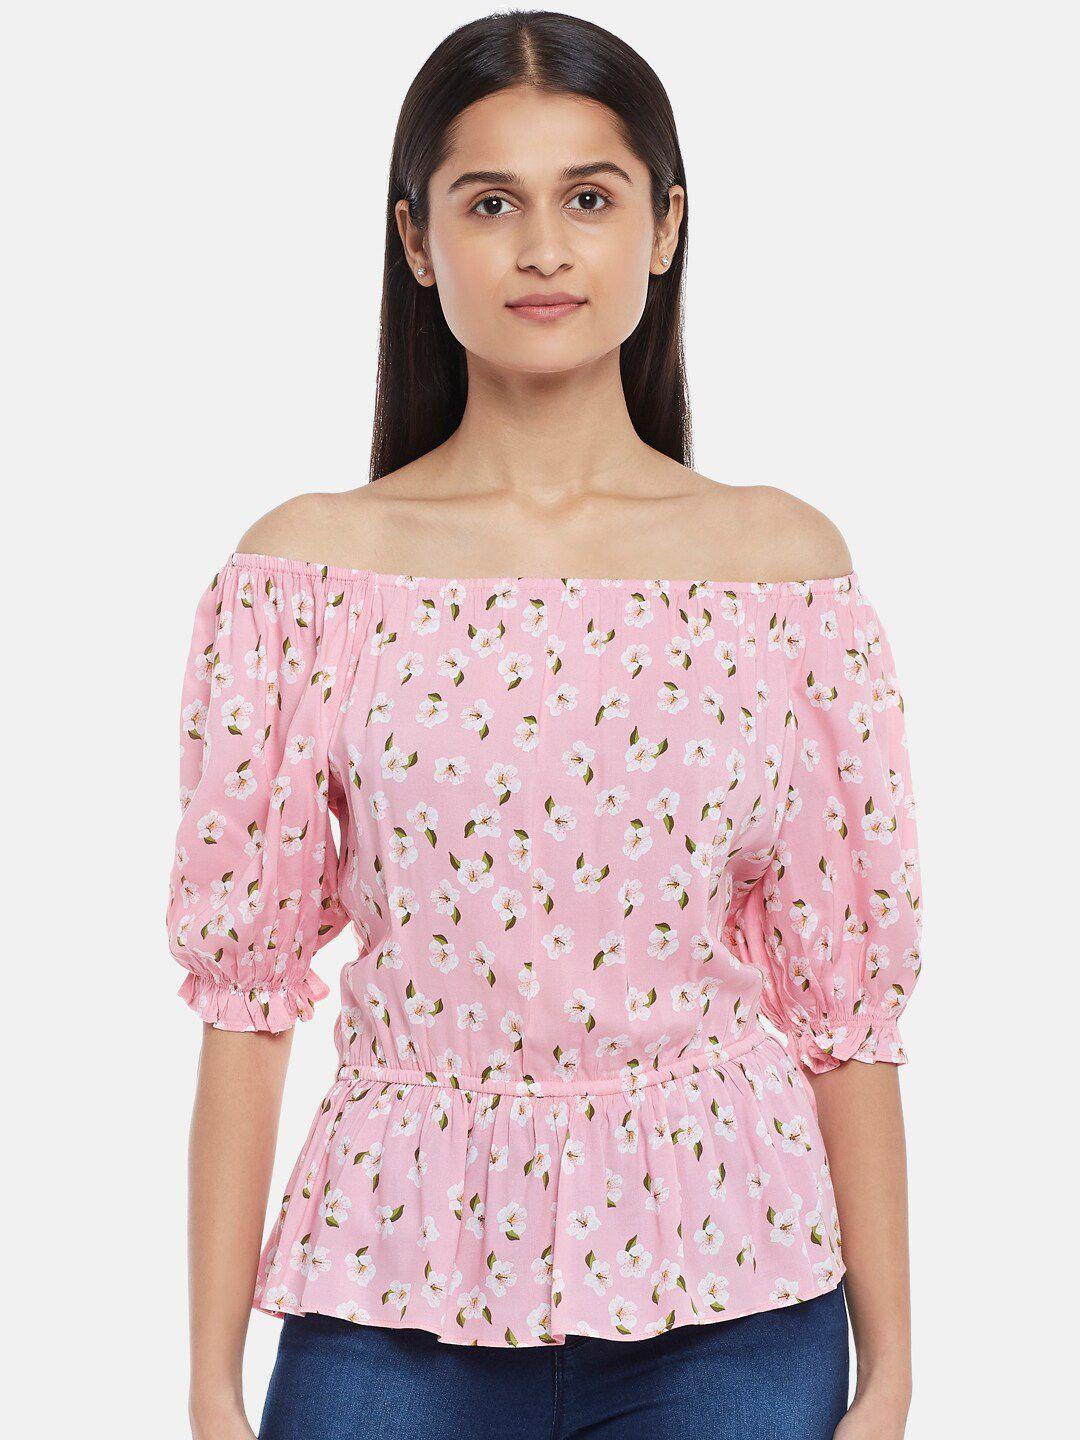 honey by pantaloons pink floral printed off-shoulder bardot top